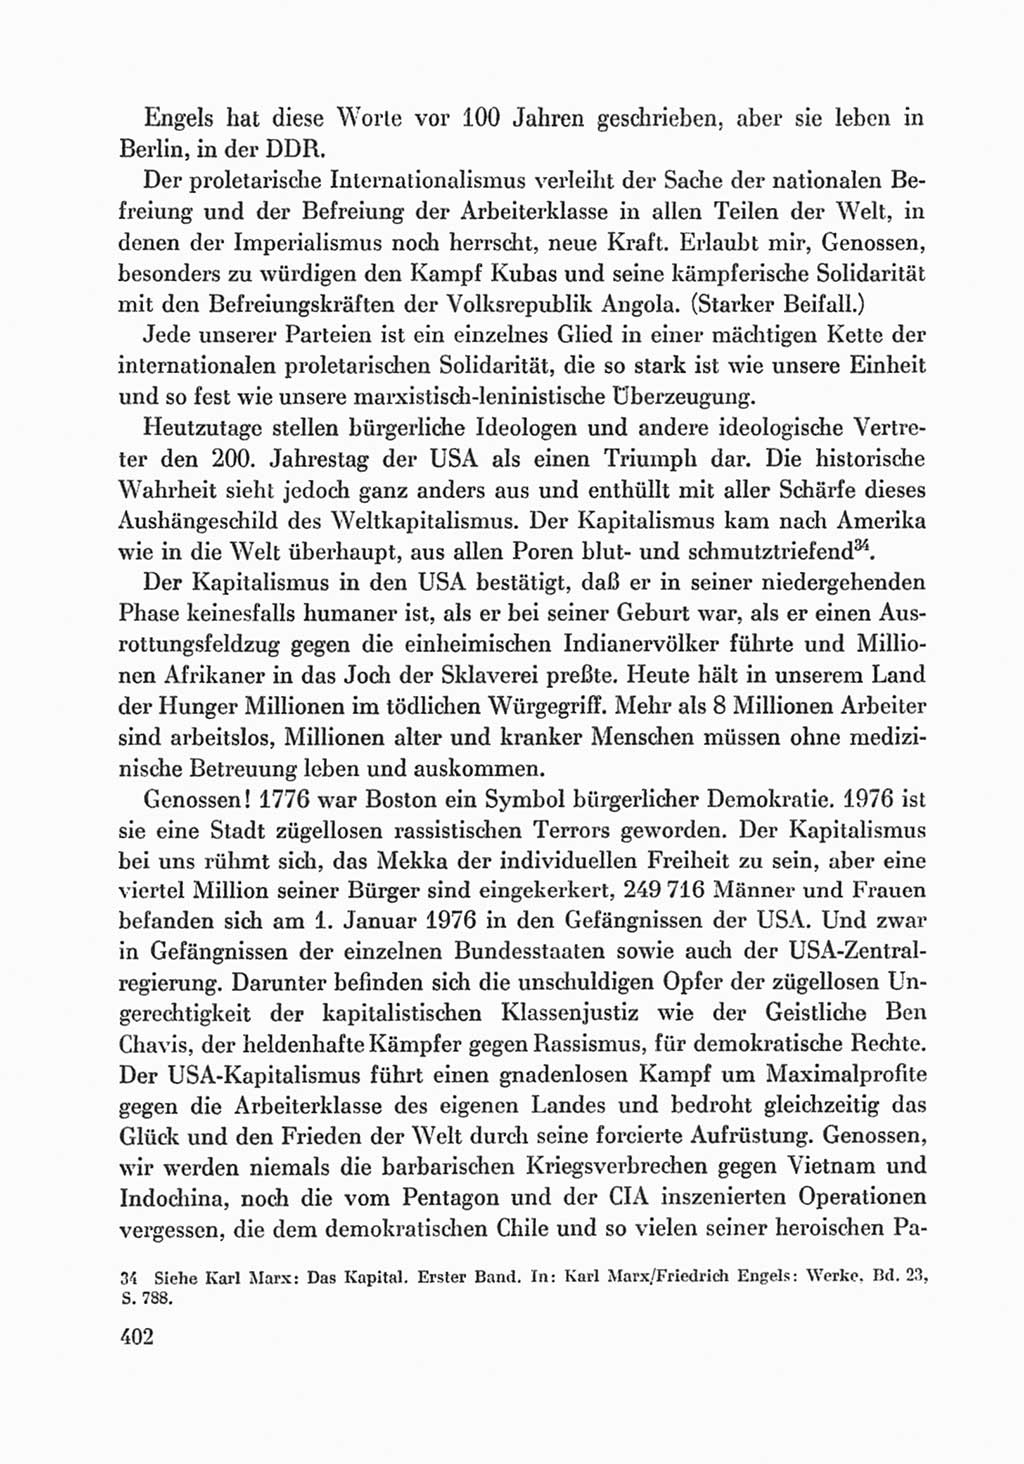 Protokoll der Verhandlungen des Ⅸ. Parteitages der Sozialistischen Einheitspartei Deutschlands (SED) [Deutsche Demokratische Republik (DDR)] 1976, Band 1, Seite 402 (Prot. Verh. Ⅸ. PT SED DDR 1976, Bd. 1, S. 402)